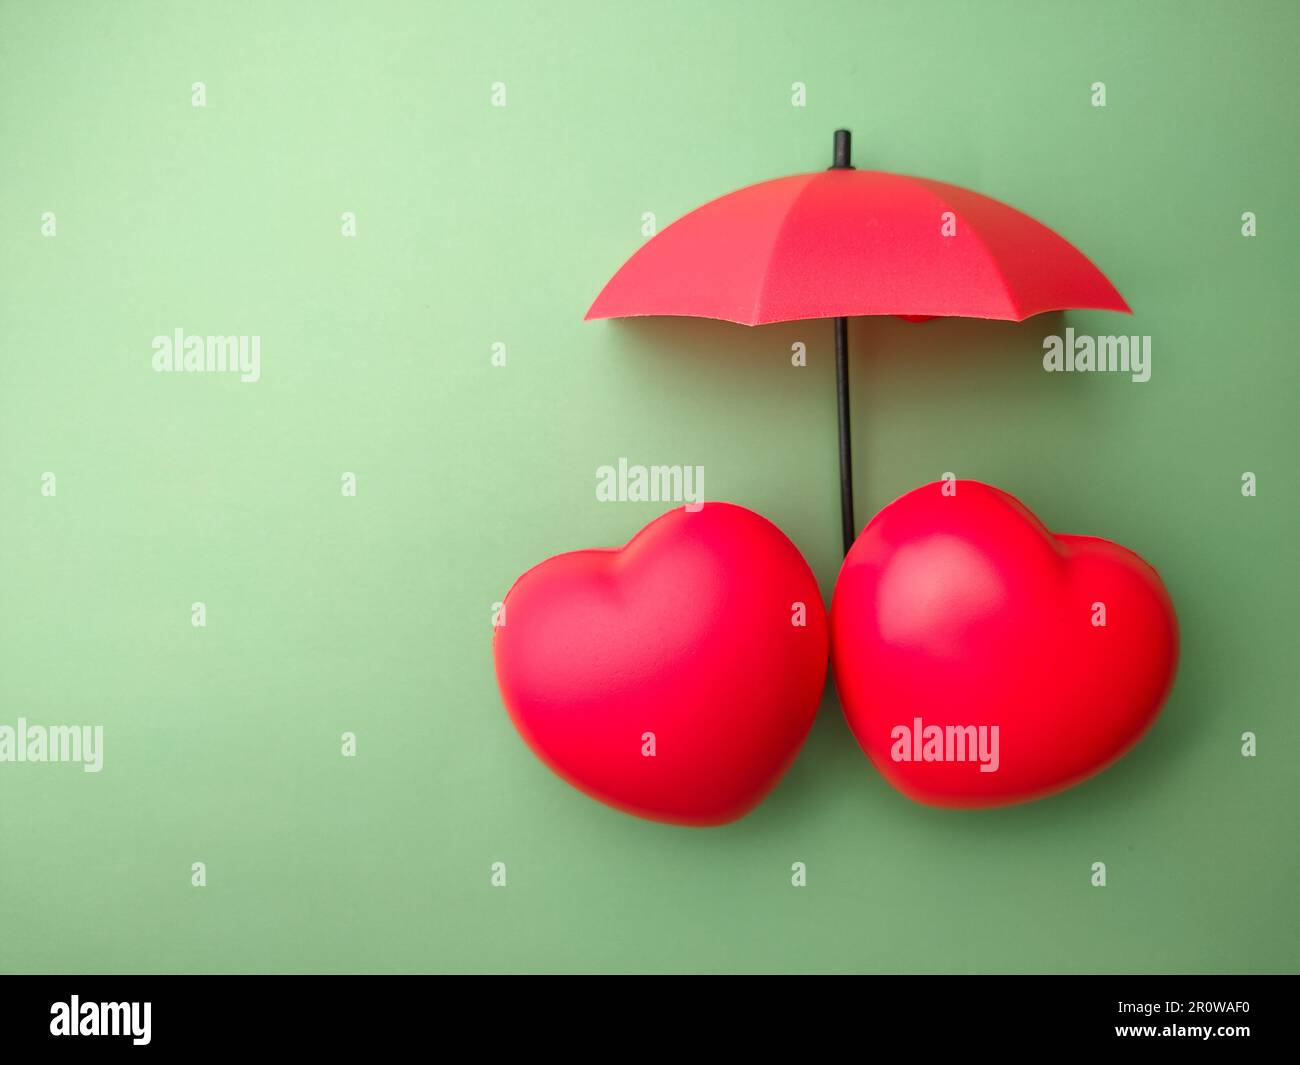 Rotes Herz und Schirm auf grünem Hintergrund Stockfotografie - Alamy